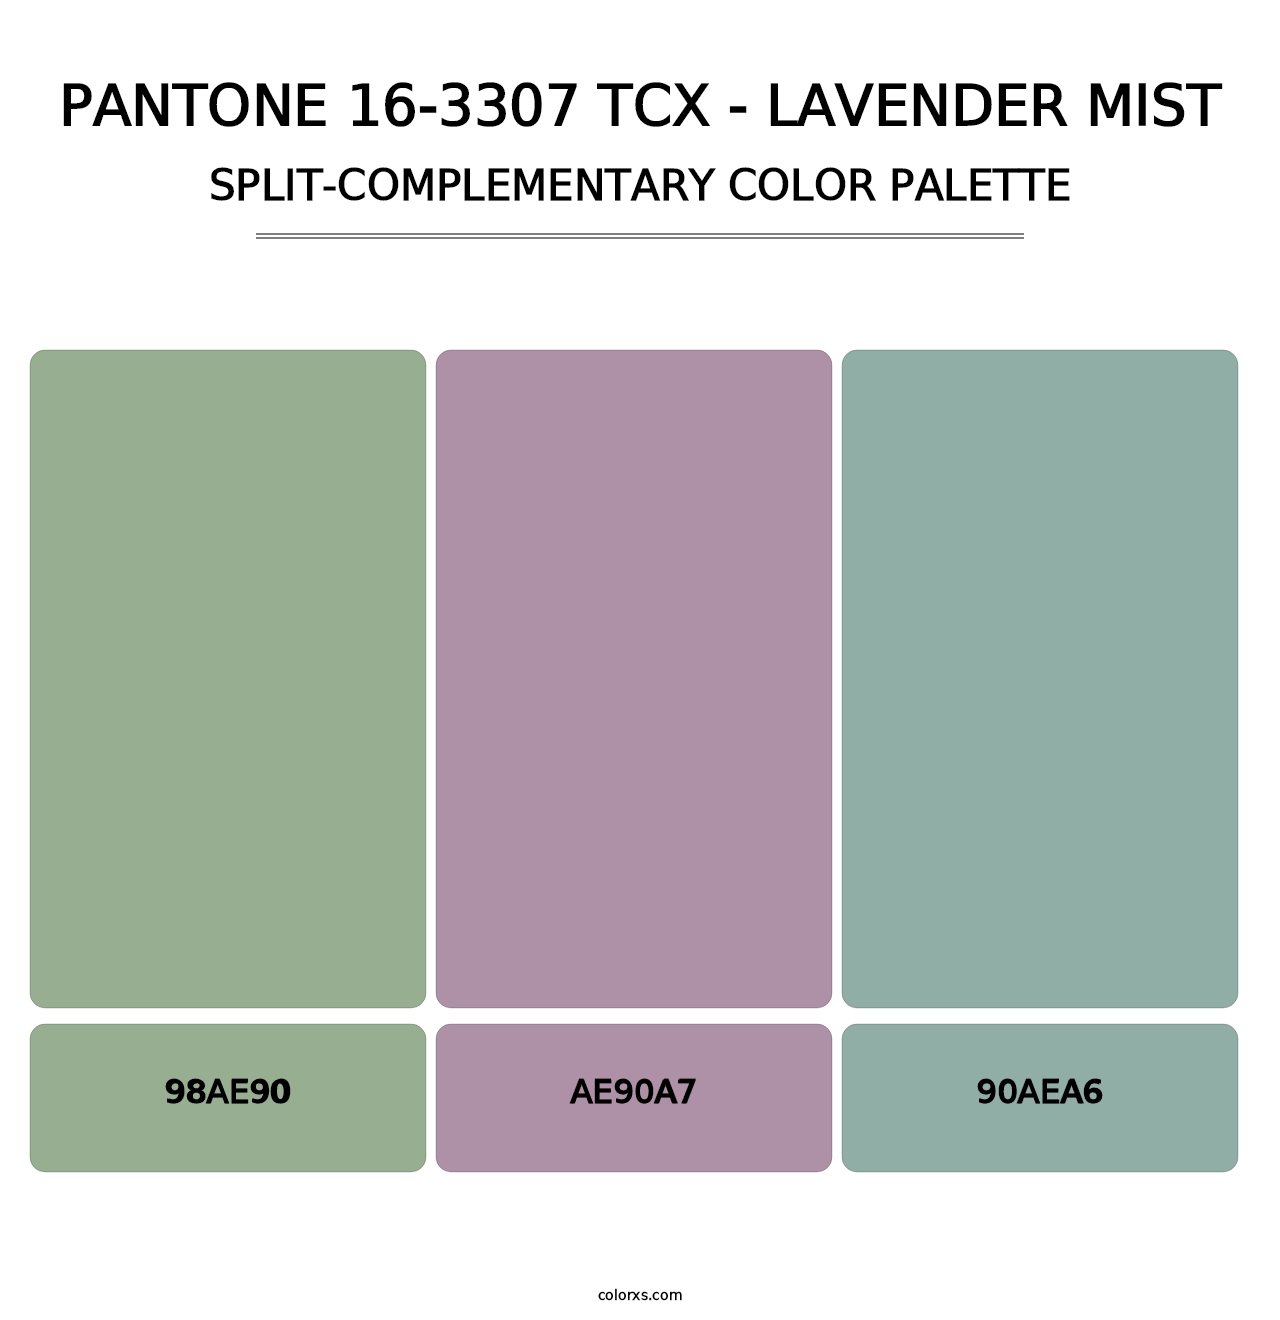 PANTONE 16-3307 TCX - Lavender Mist - Split-Complementary Color Palette